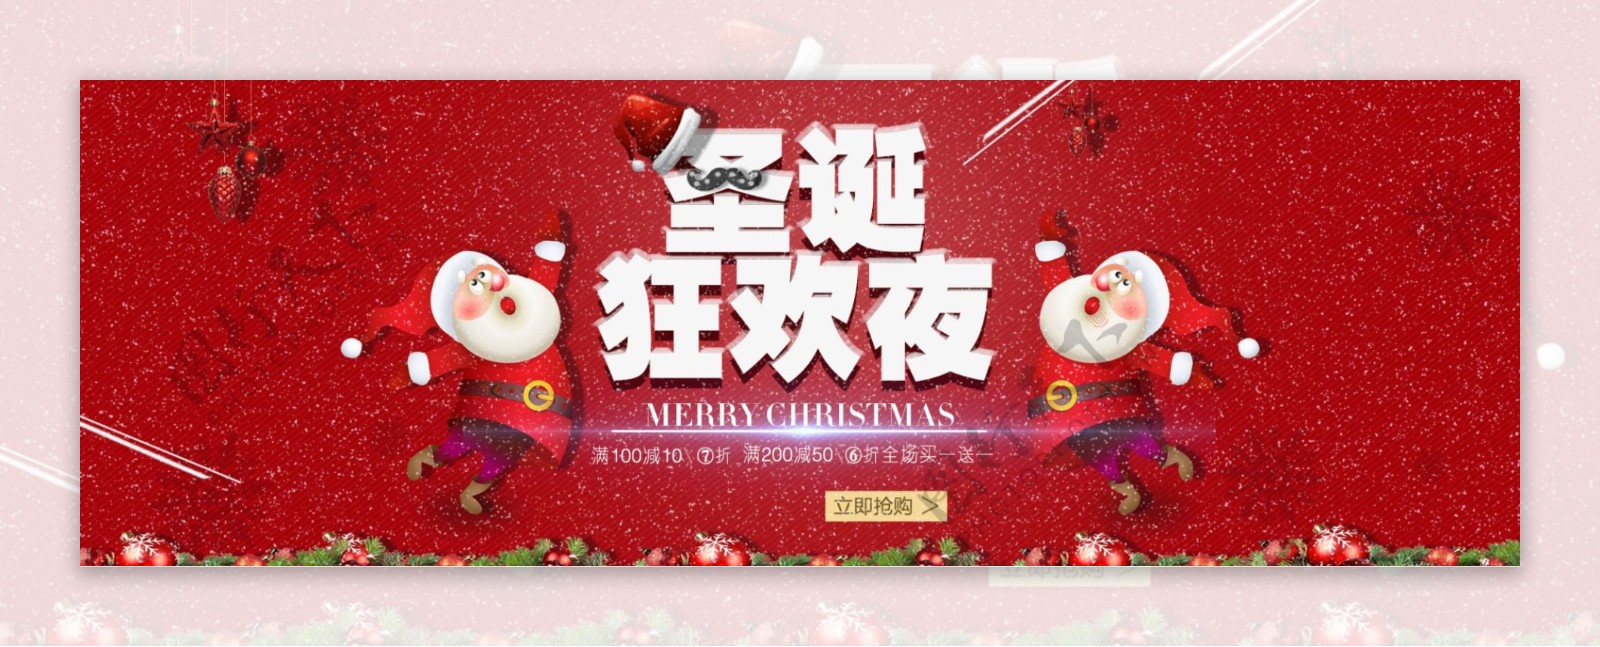 红色质感圣诞节促销banner